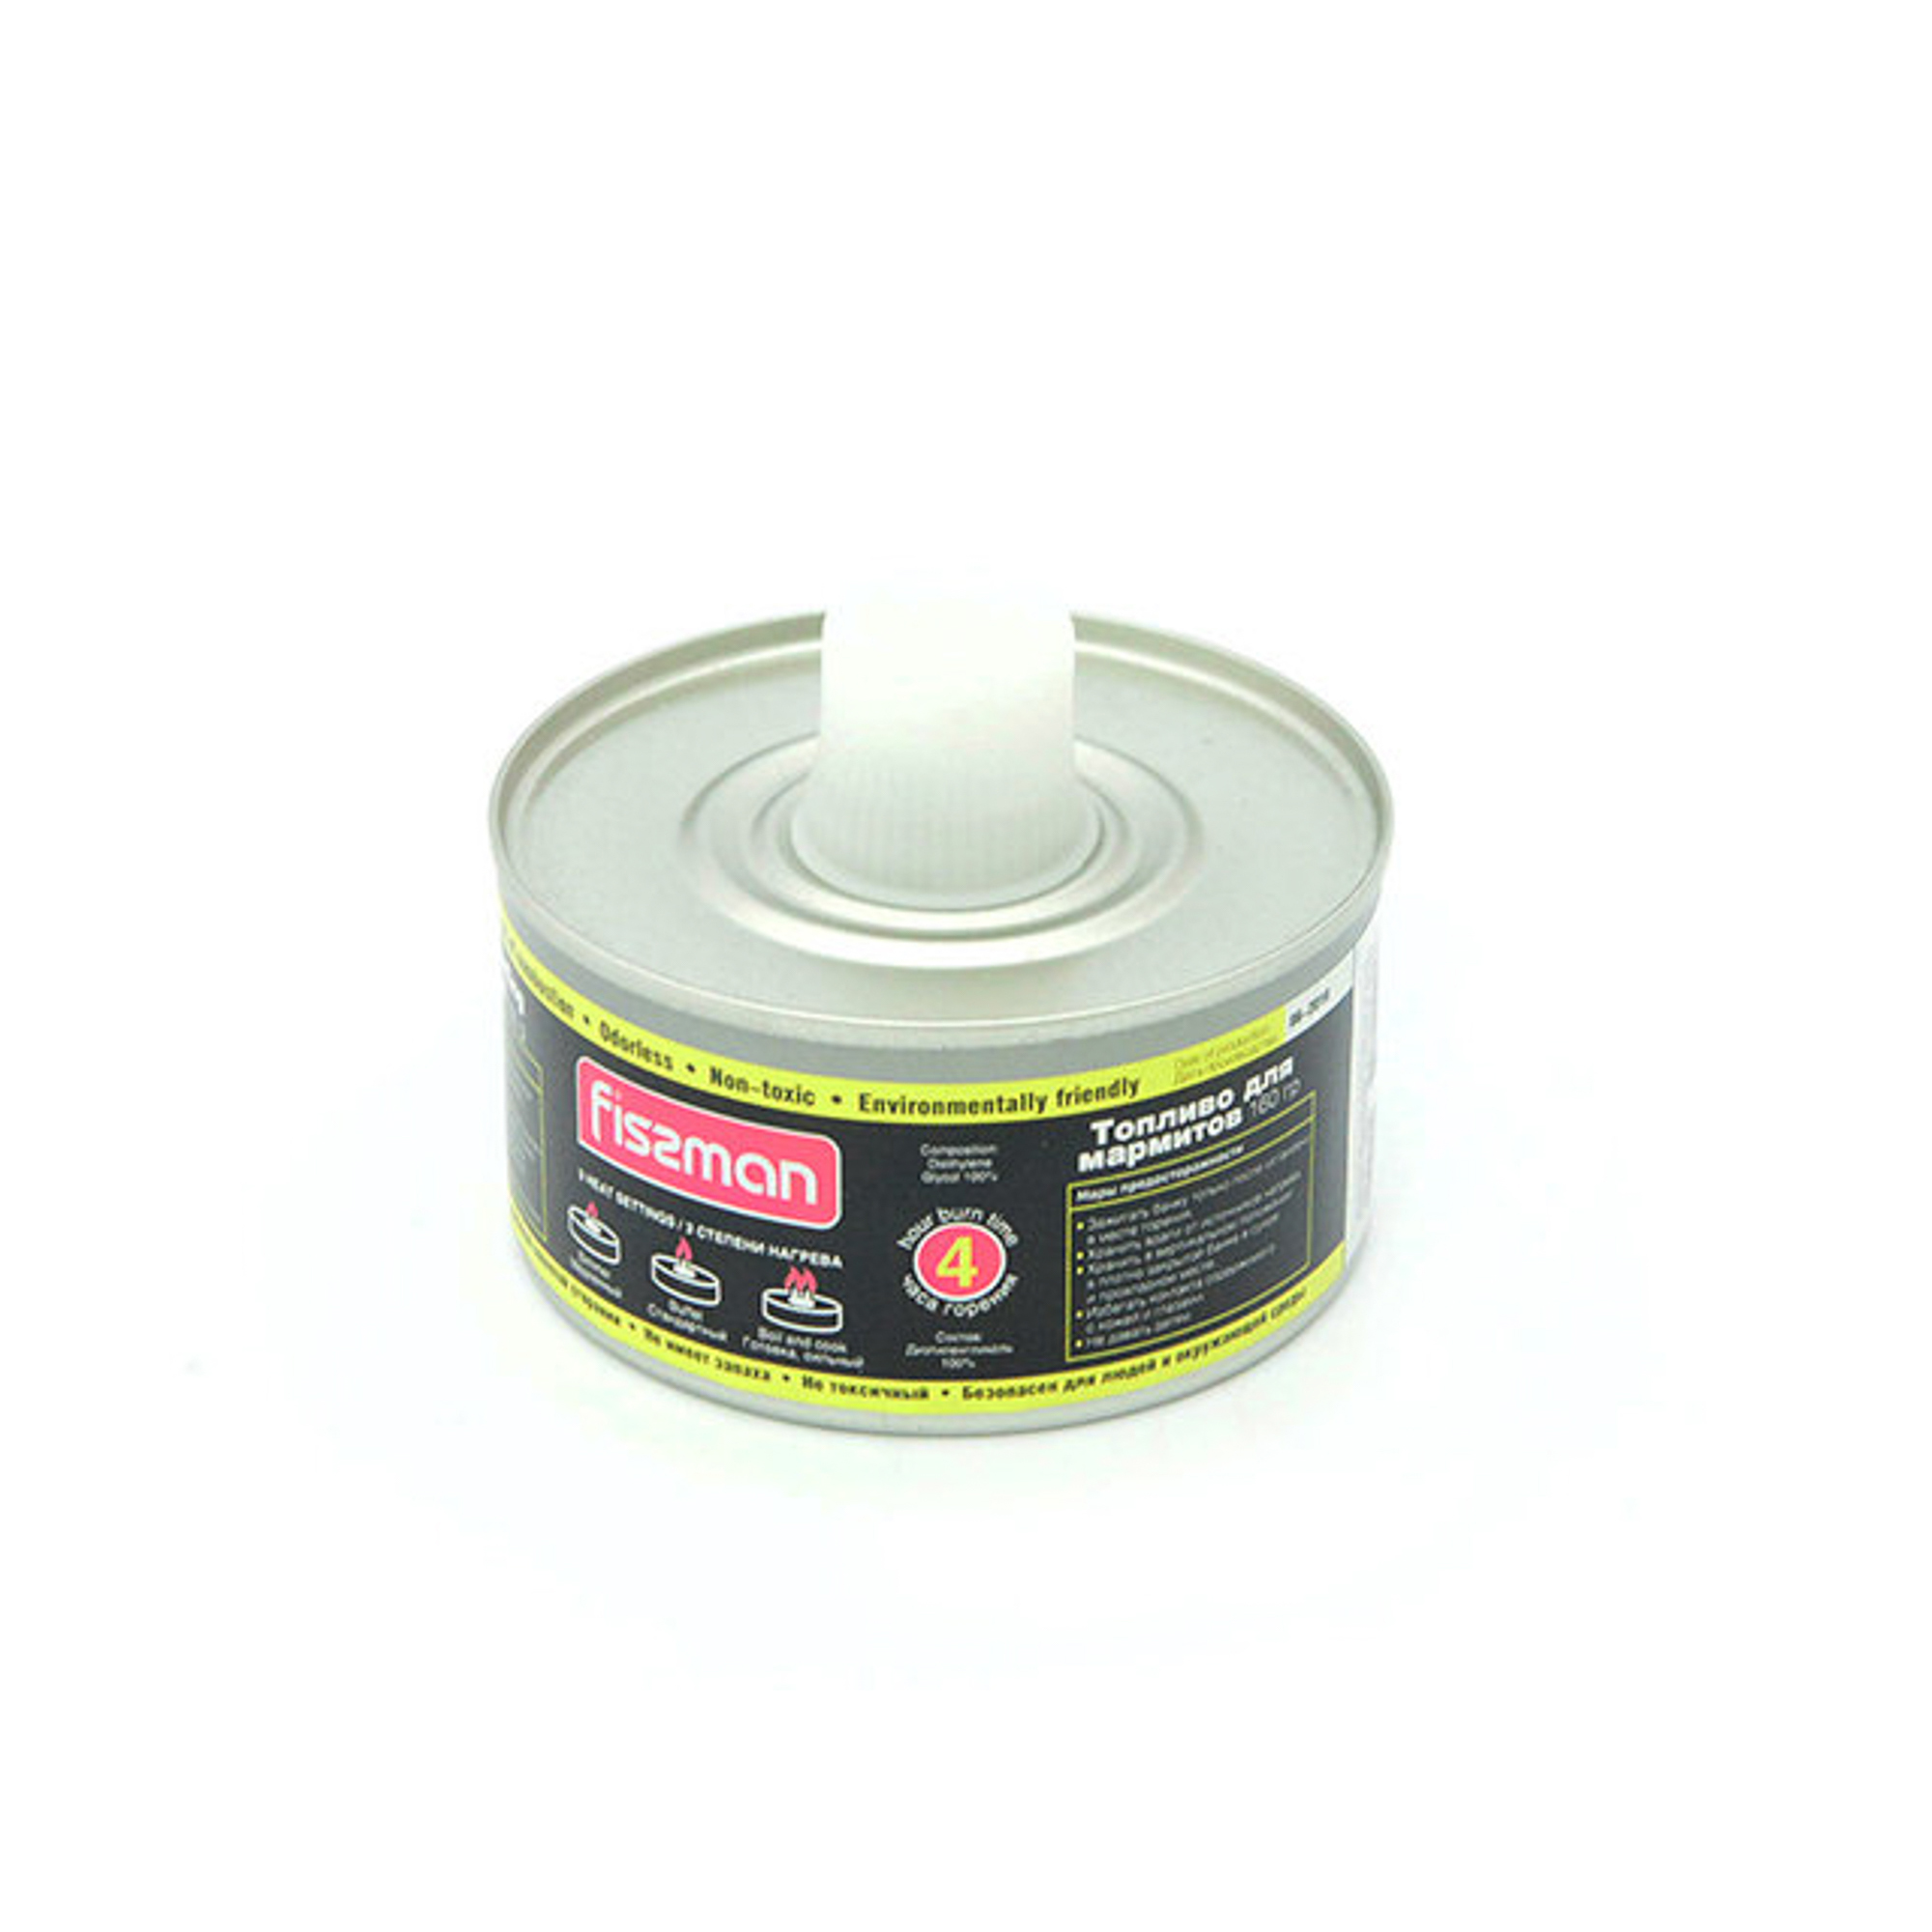 Топливо для мармитов Fissman с фитилем в банке с пластиковой крышкой 160 г / 4 часа горения (диэтиленгликоль)